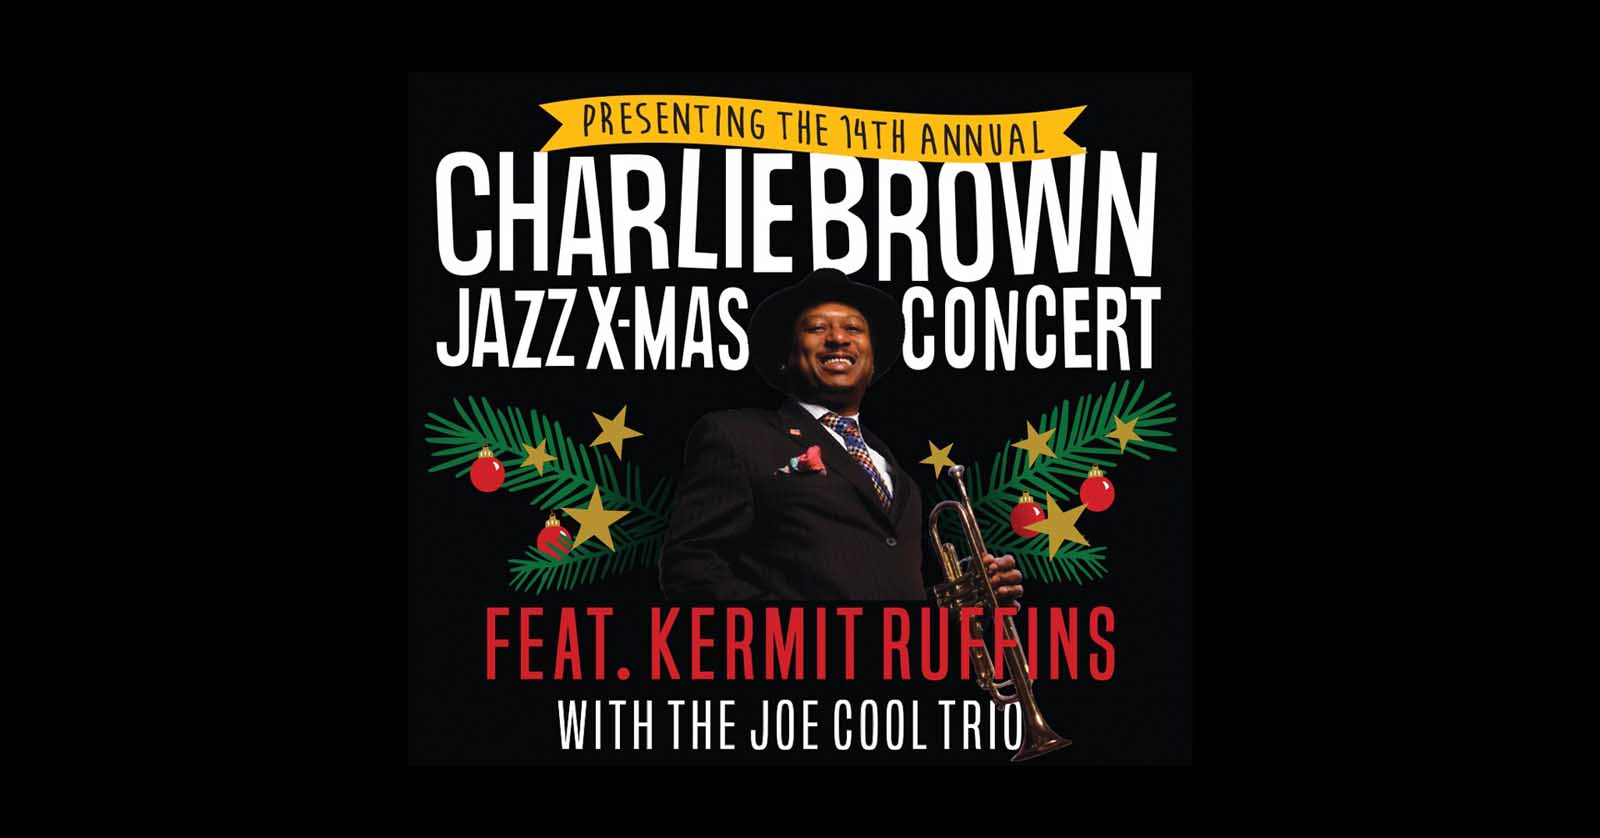 Charlie Brown Jazz Christmas This Weekend